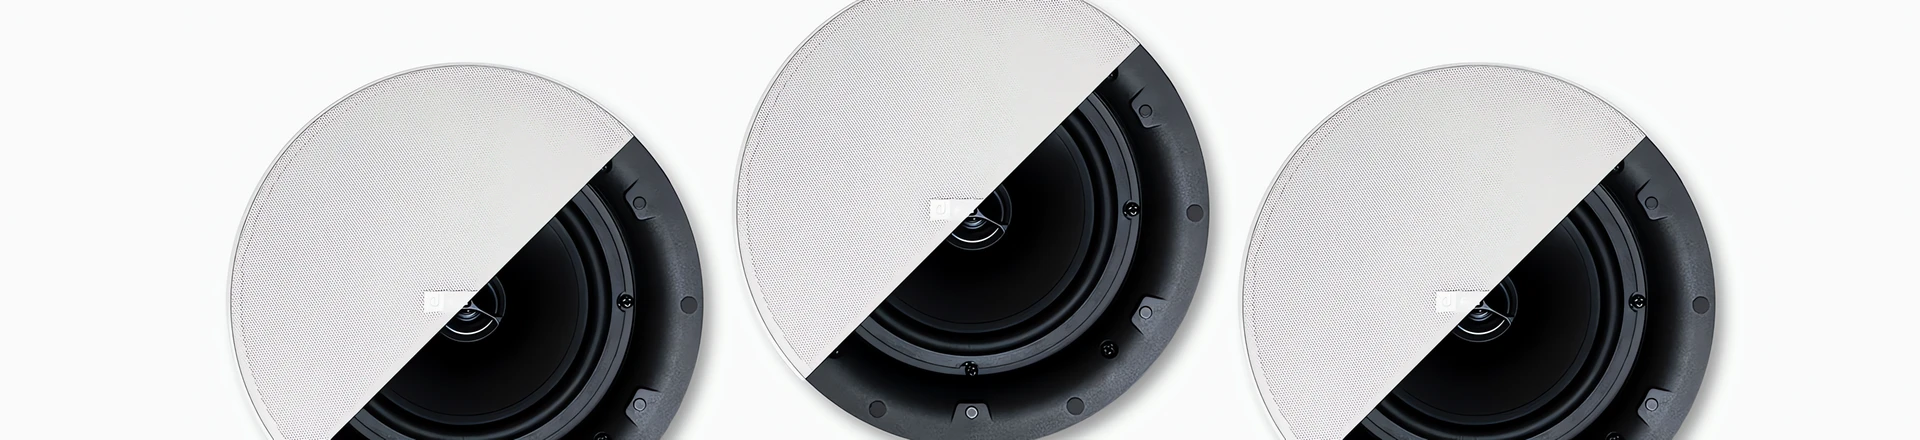 Nowe głośniki sufitowe serii VIC firmy Ecler